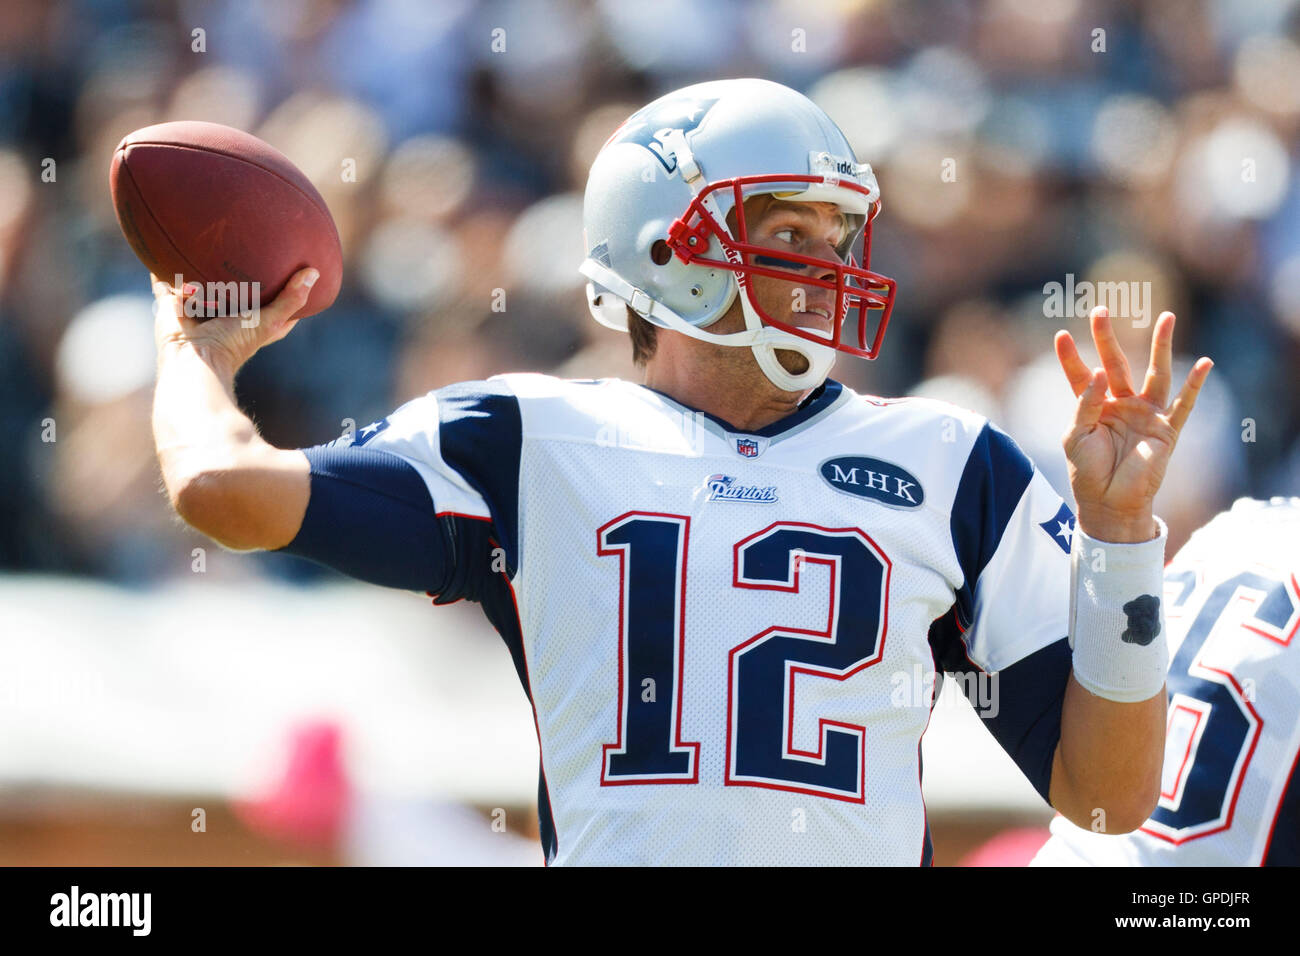 Okt 2, 2011; Oakland, Ca, USA; New England Patriots Quarterback Tom Brady (12) gegen die Oakland Raiders im ersten Quartal bei o.co Kolosseum. Stockfoto